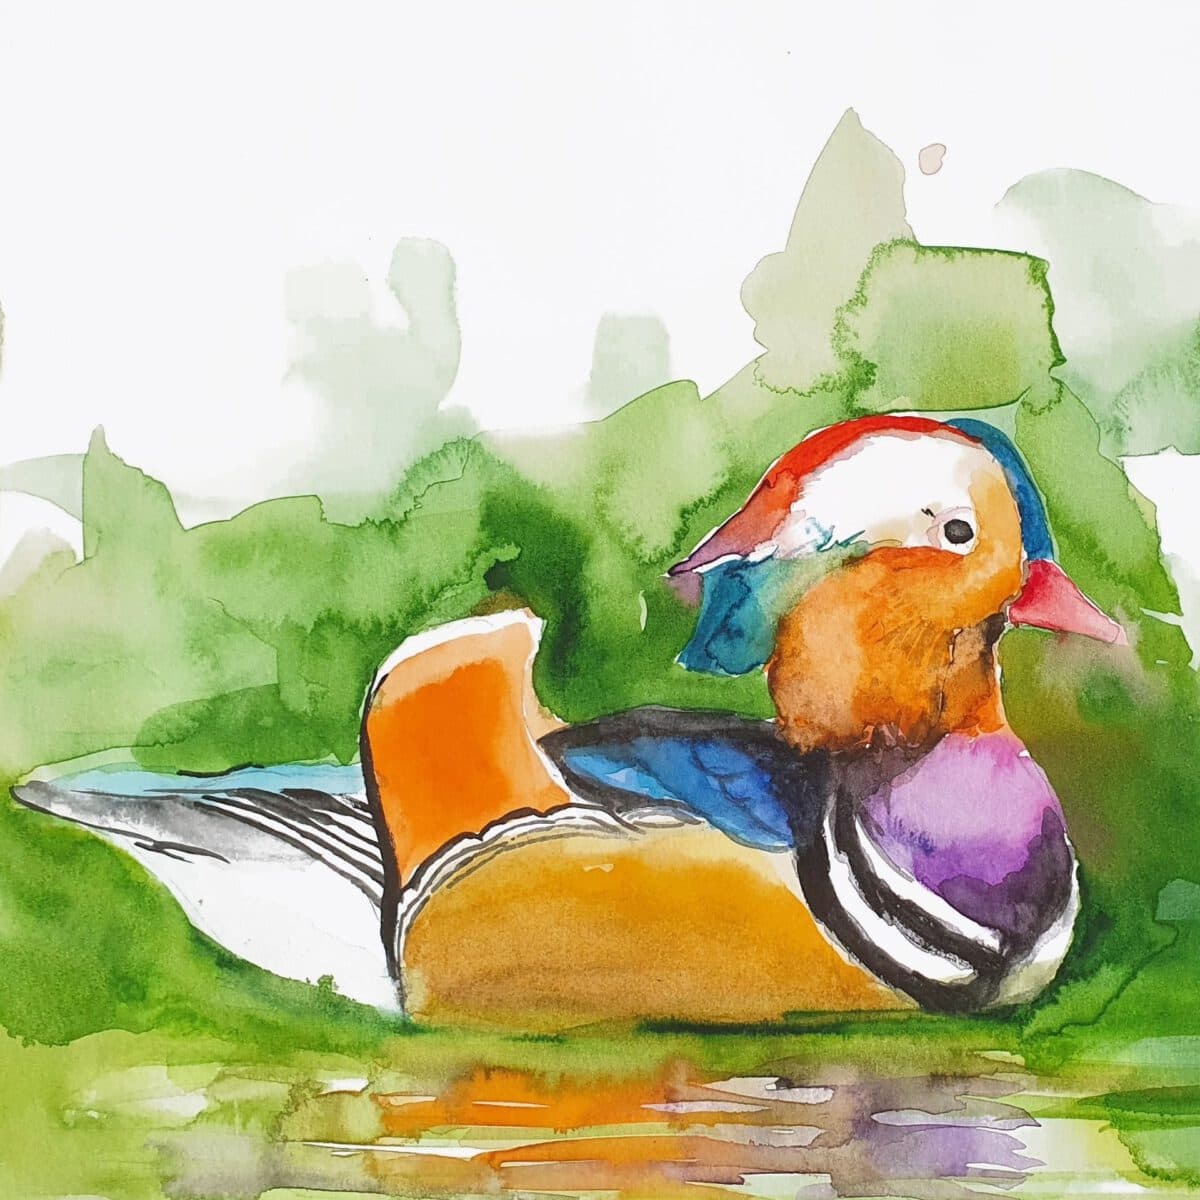 ברווז במים ציור ציפור מקורי ציפורים ציורים אמנות אמנים ישראלים צבעי מים אקוורל אנה רדיס anna radis